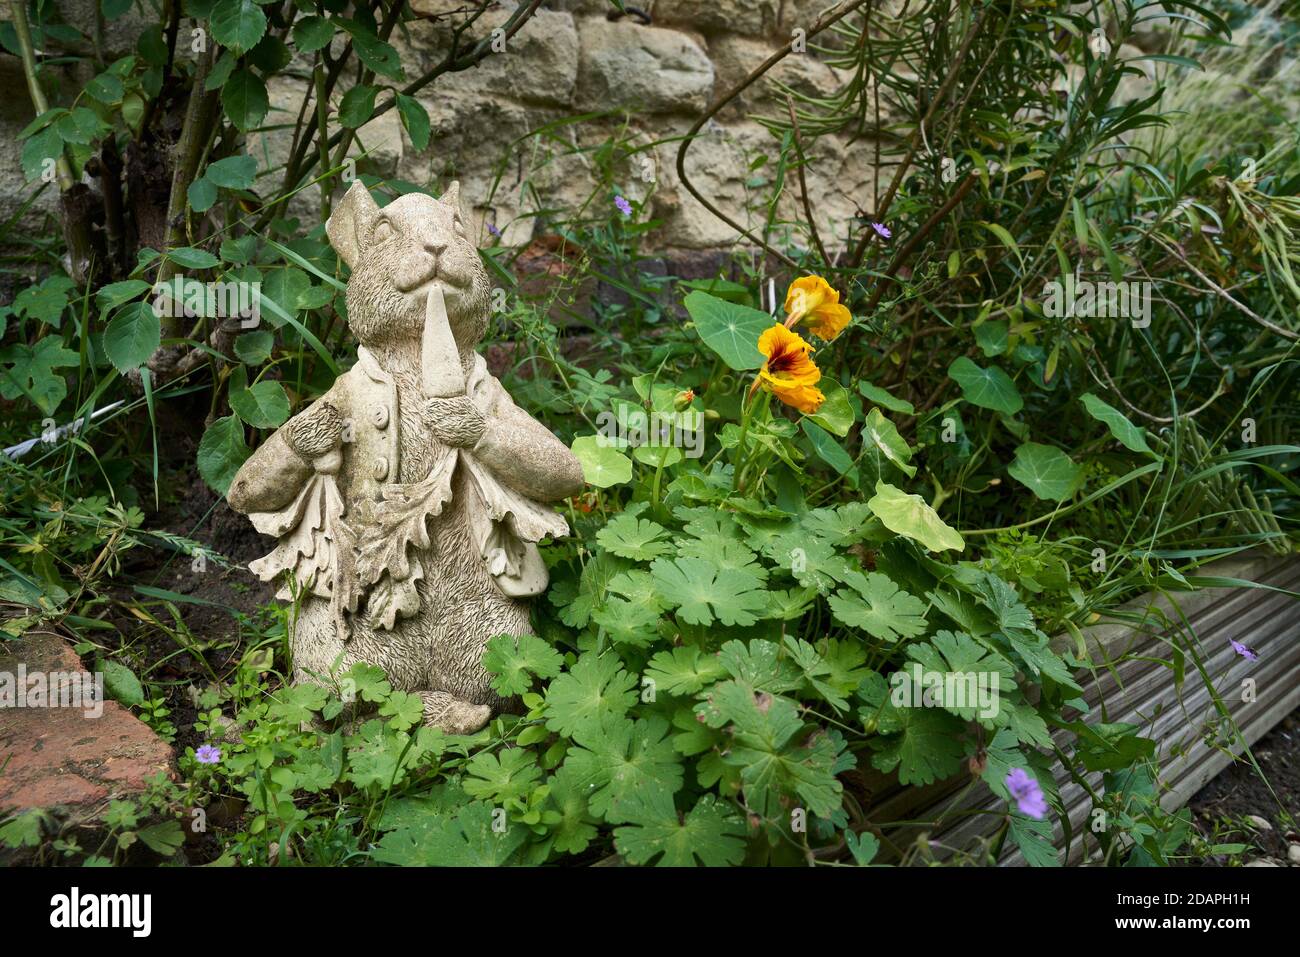 Gießbetongartenstatue des Charakters Peter Kaninchen essen Eine Karotte in einem bewachsenen Garten grenzt an einen Stein Wand Stockfoto